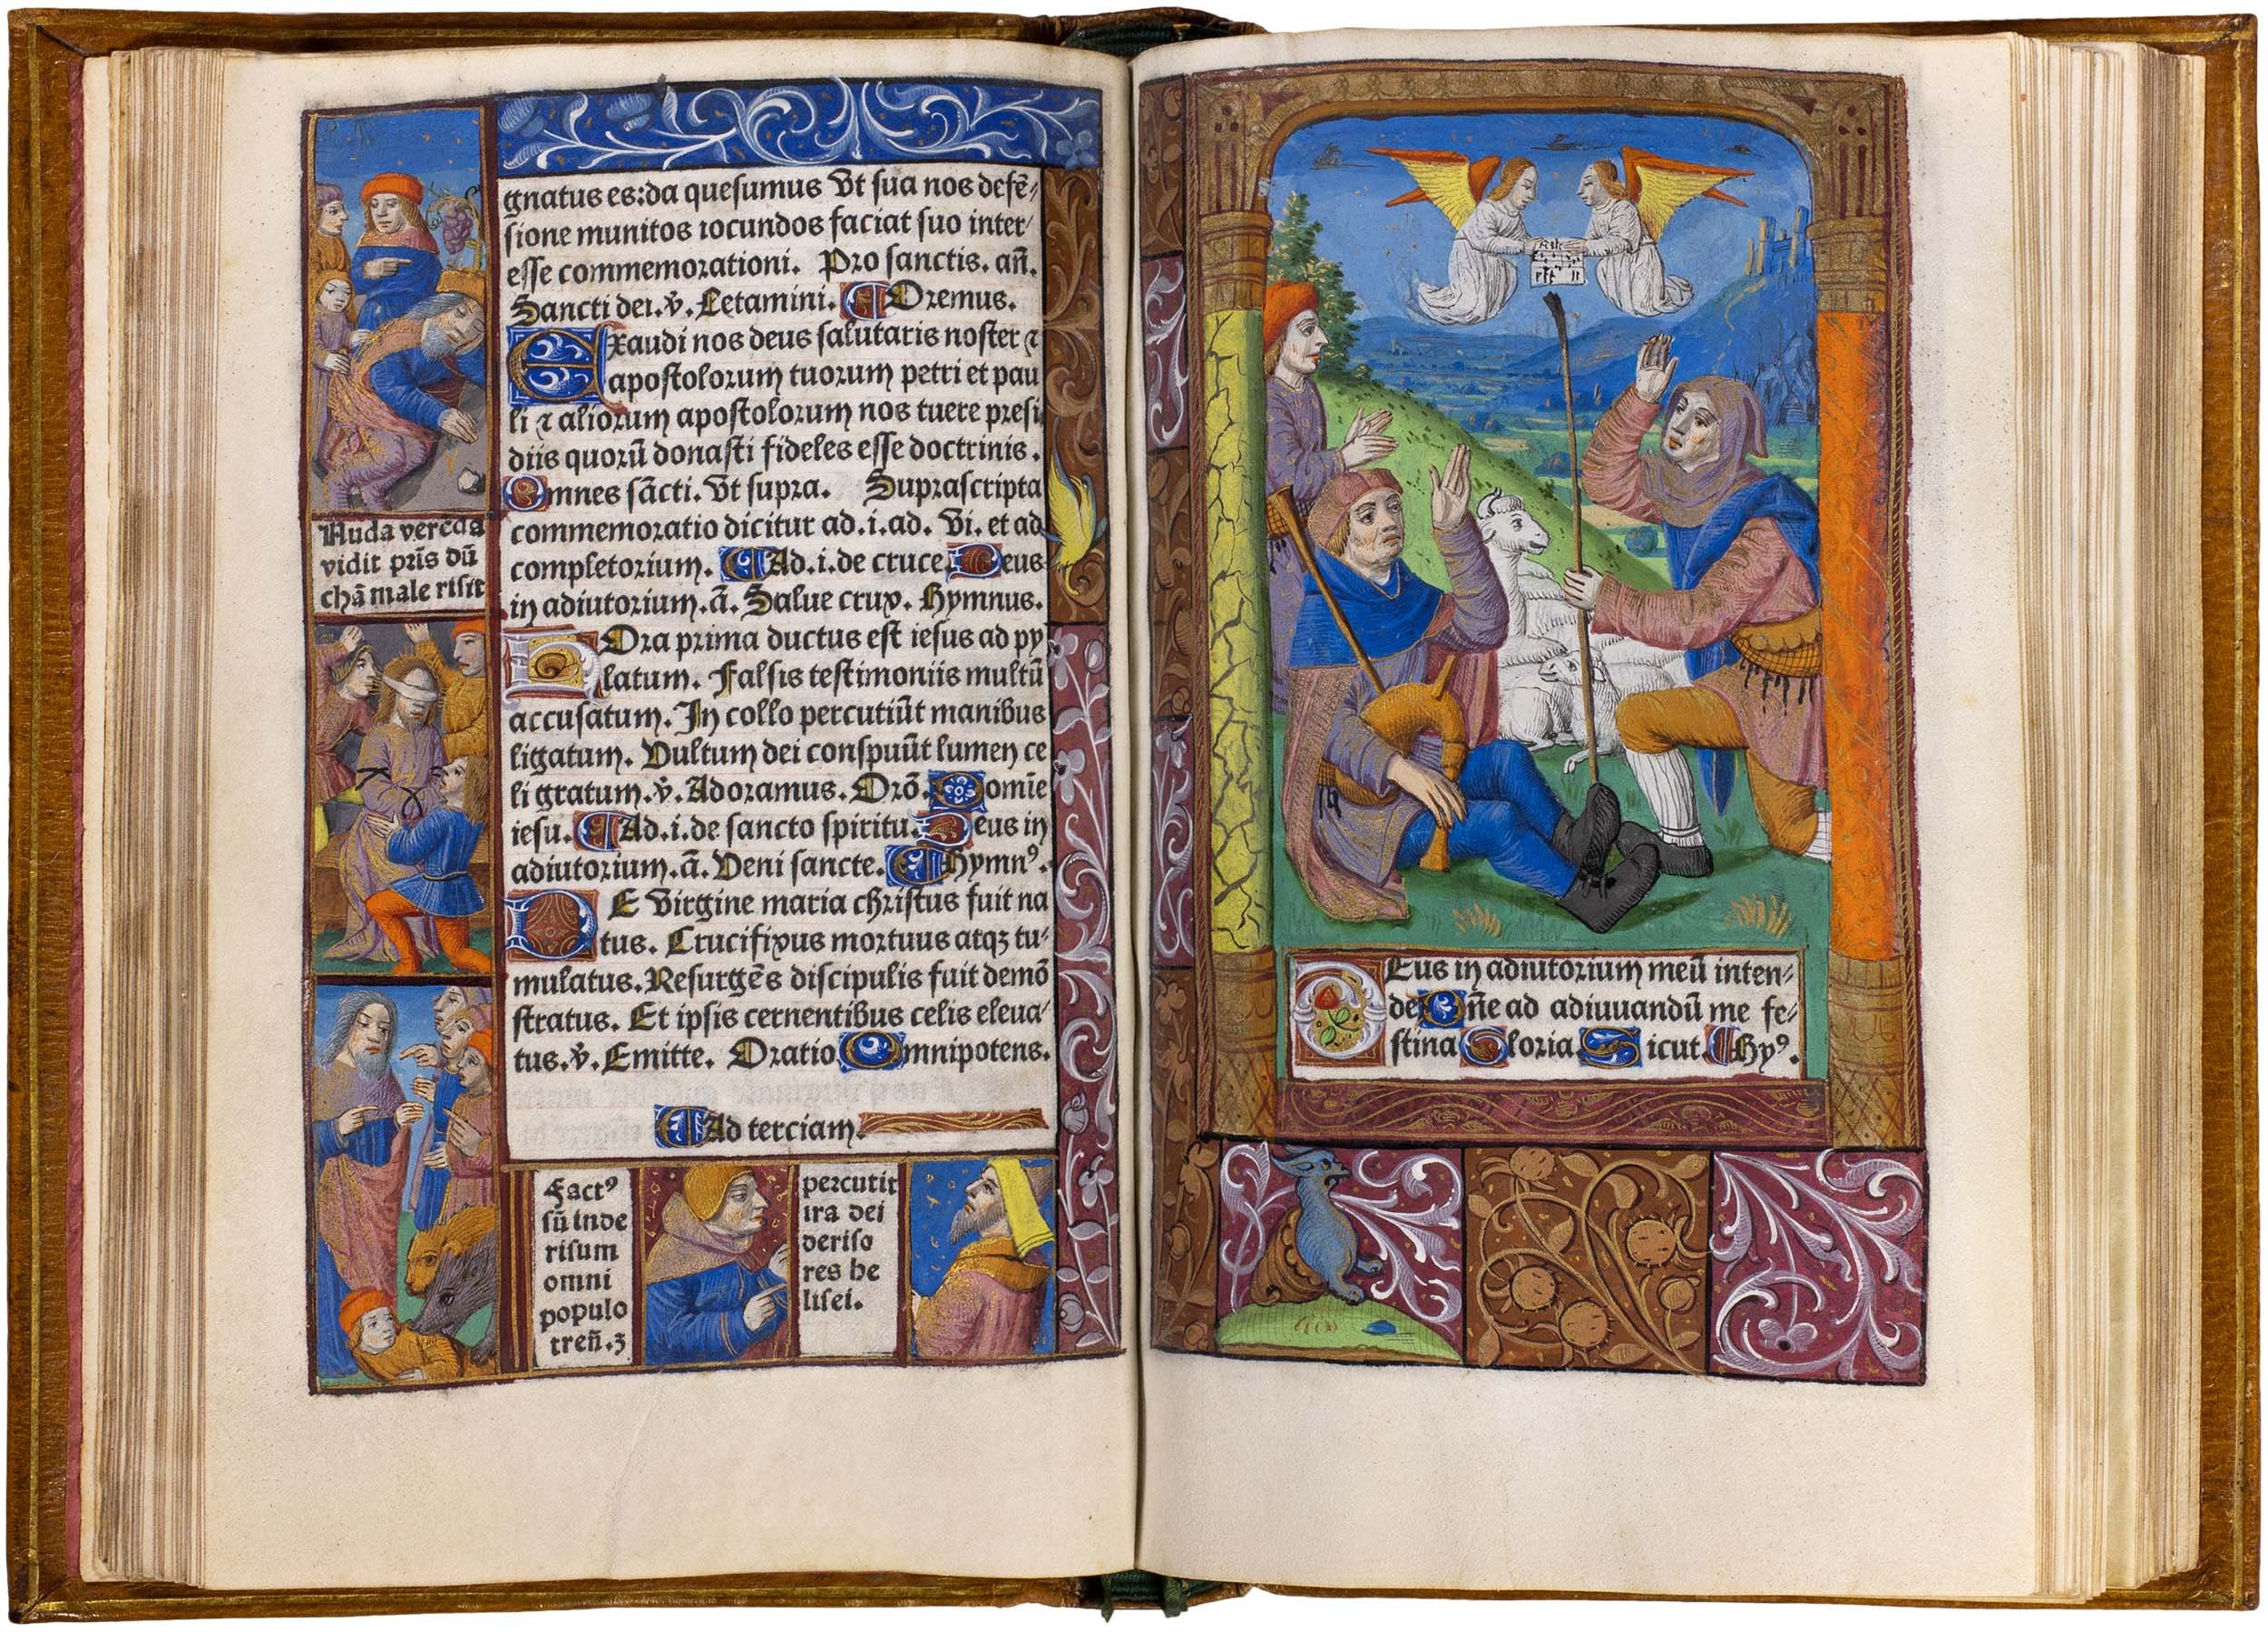 Horae-bmv-pigouchet-19-april-1494-pigouchet-robert-gaguin-illuminated-vellum-copy-36.jpg